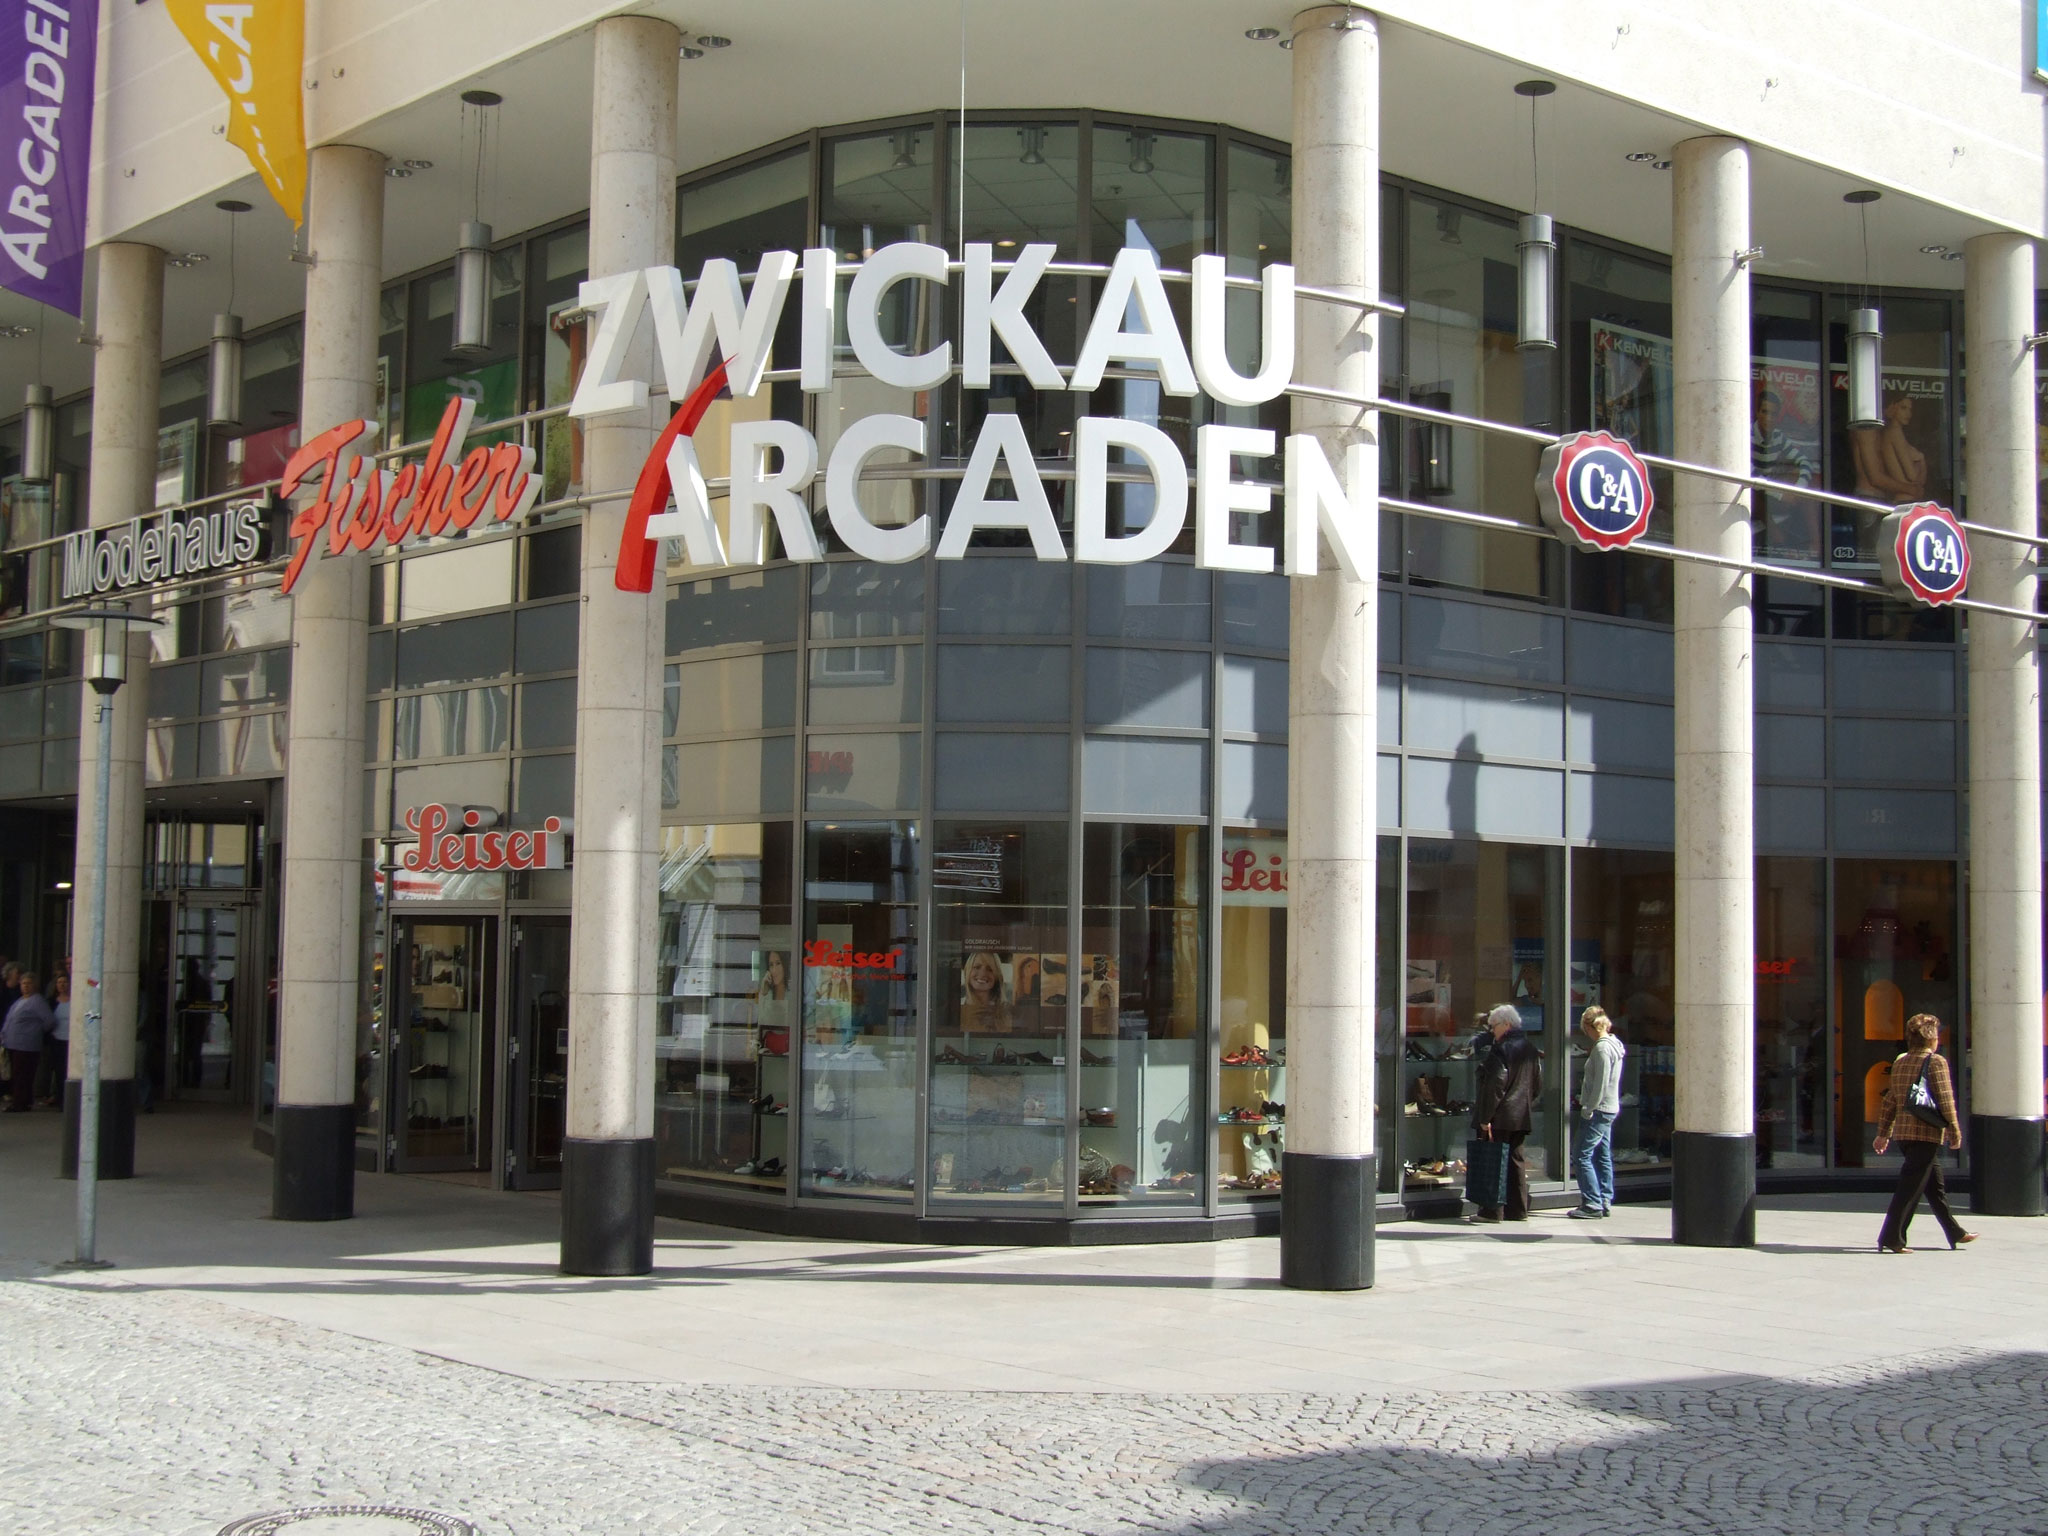 Geprüftes Objekt in Zwickau, Zwickau-Arcaden (Bild 1)